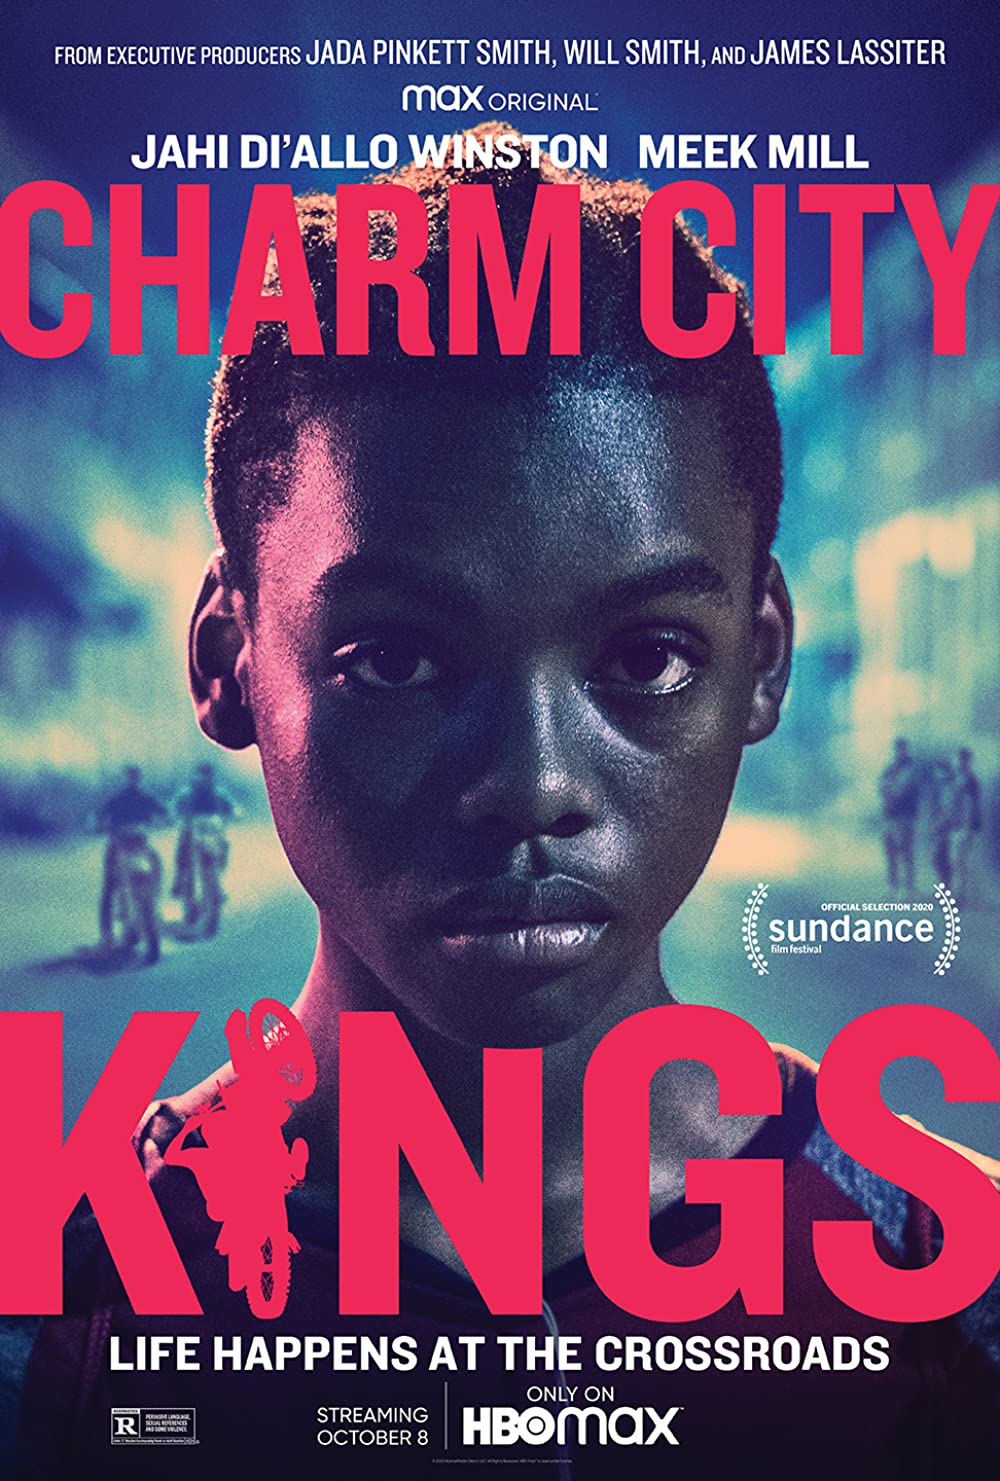 Filmbeschreibung zu Charm City Kings